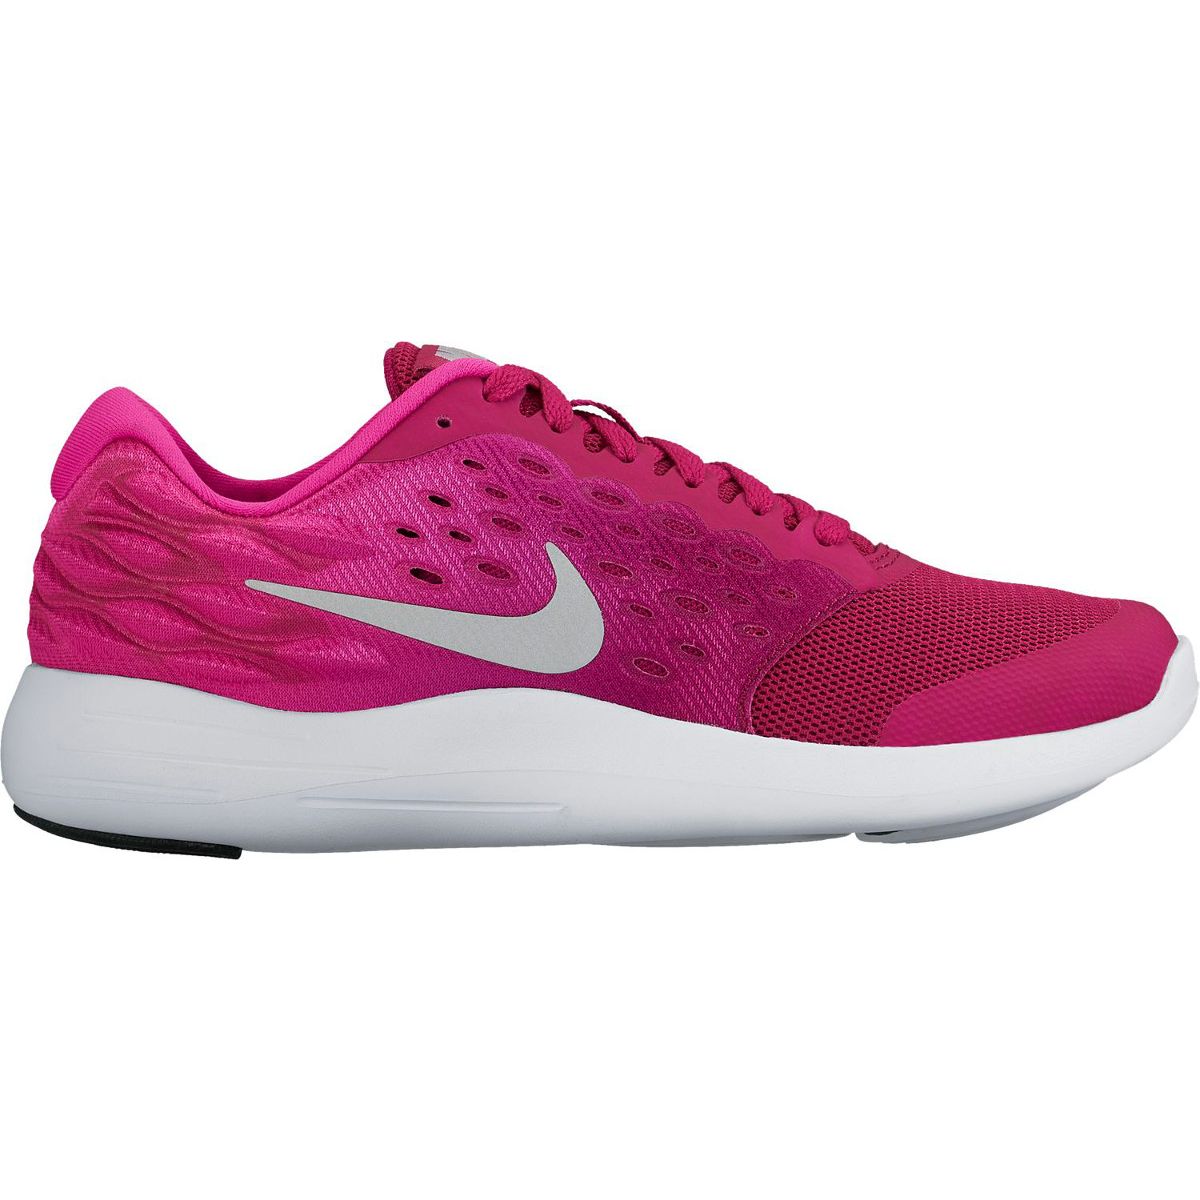 Nike Lunarstelos (GS) Girls' Running Shoes 844974-500